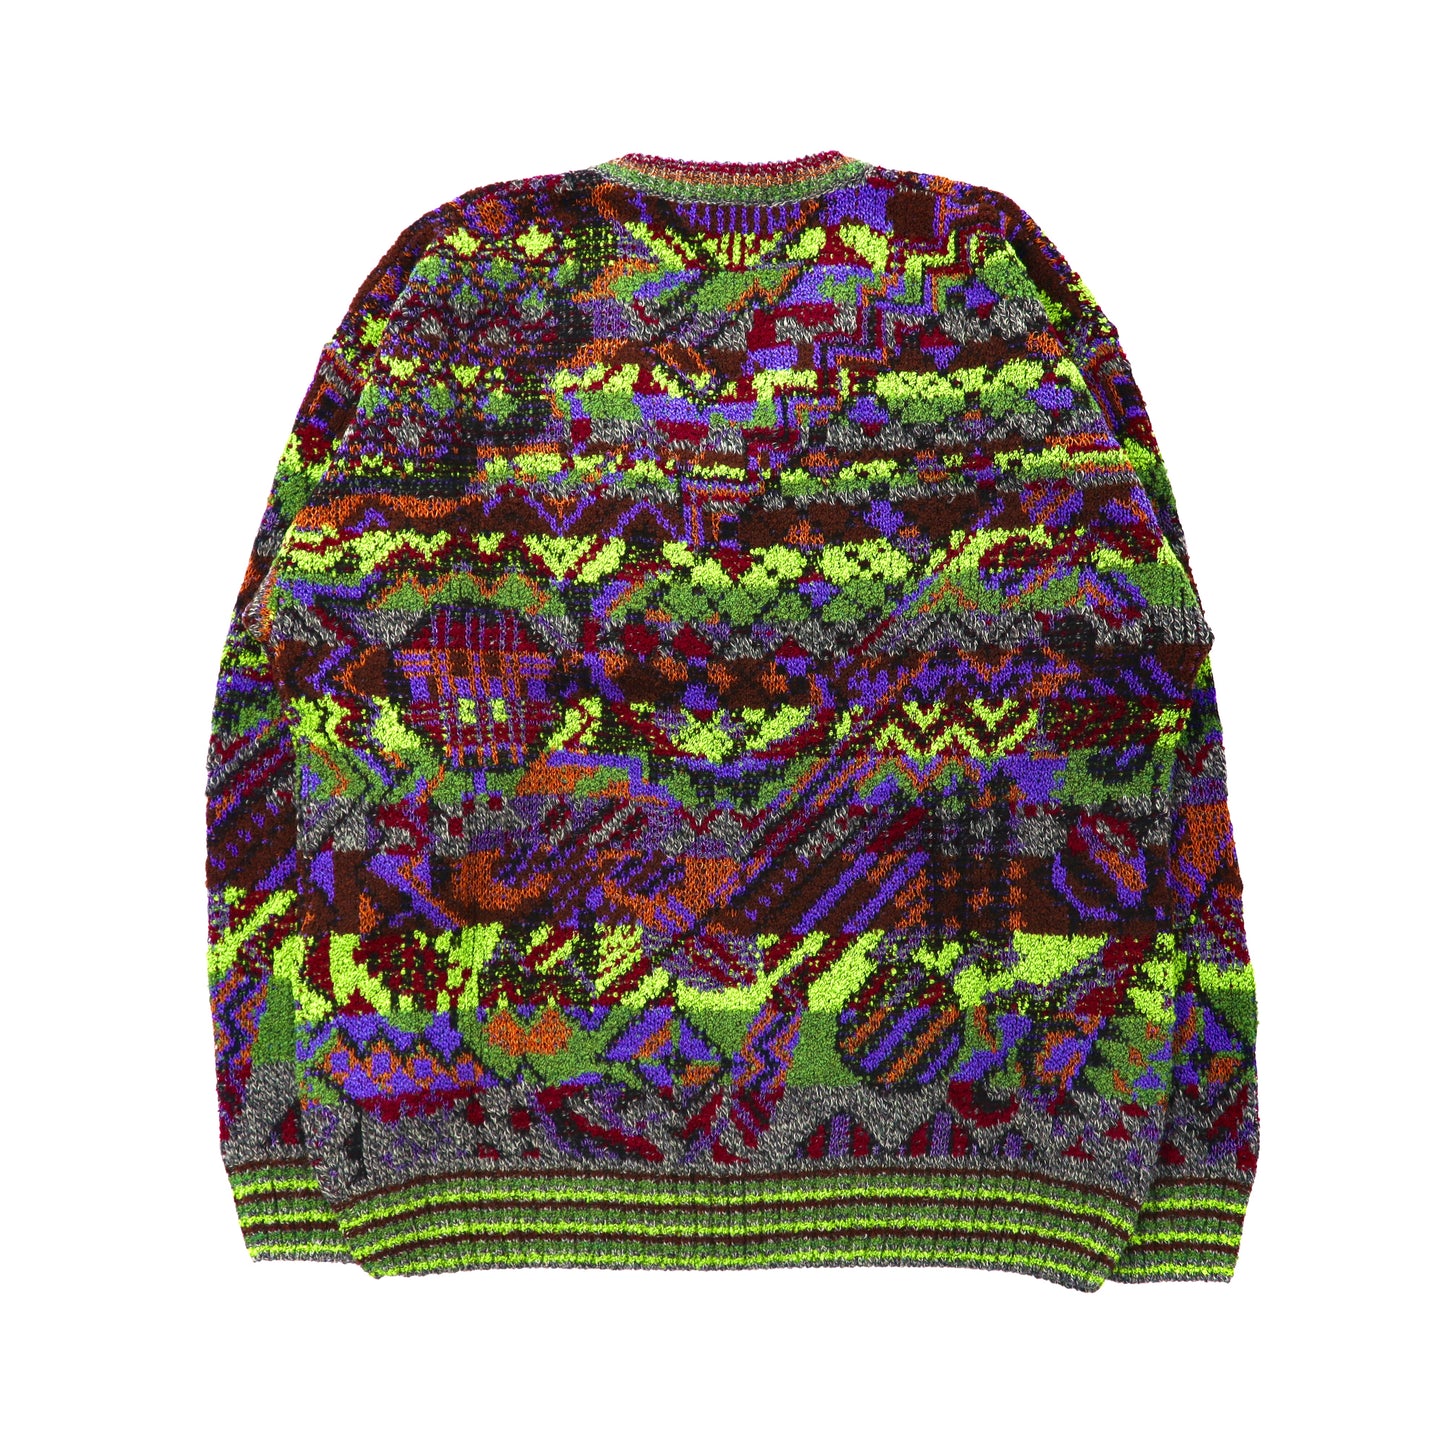 Fantasie Di SetTembre Total Pattern Knit Sweater M Multi-Color